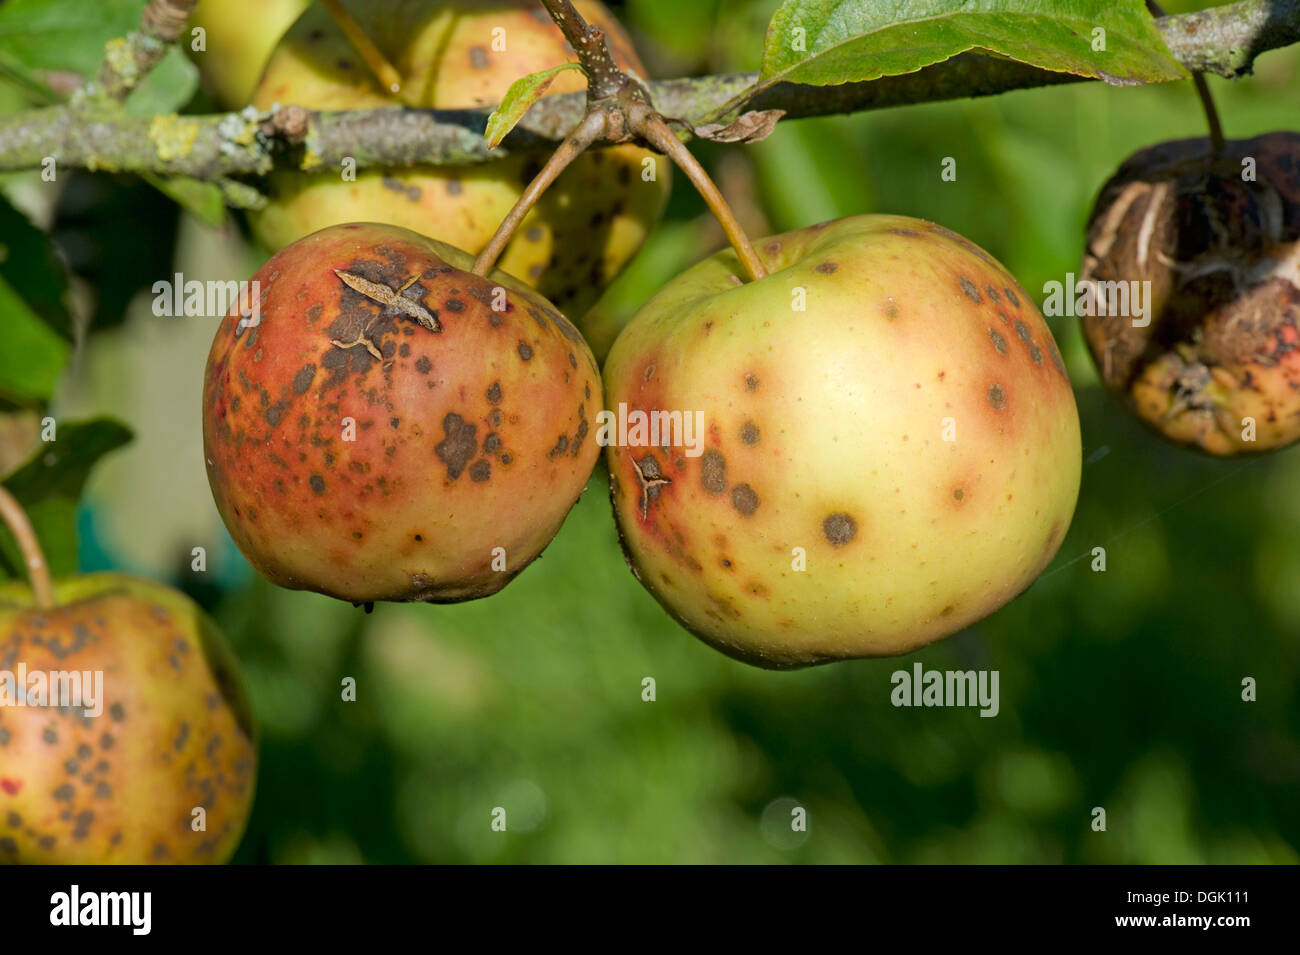 Golden Delicious severamente afectados por apple scab, Venturia inaequalis Foto de stock